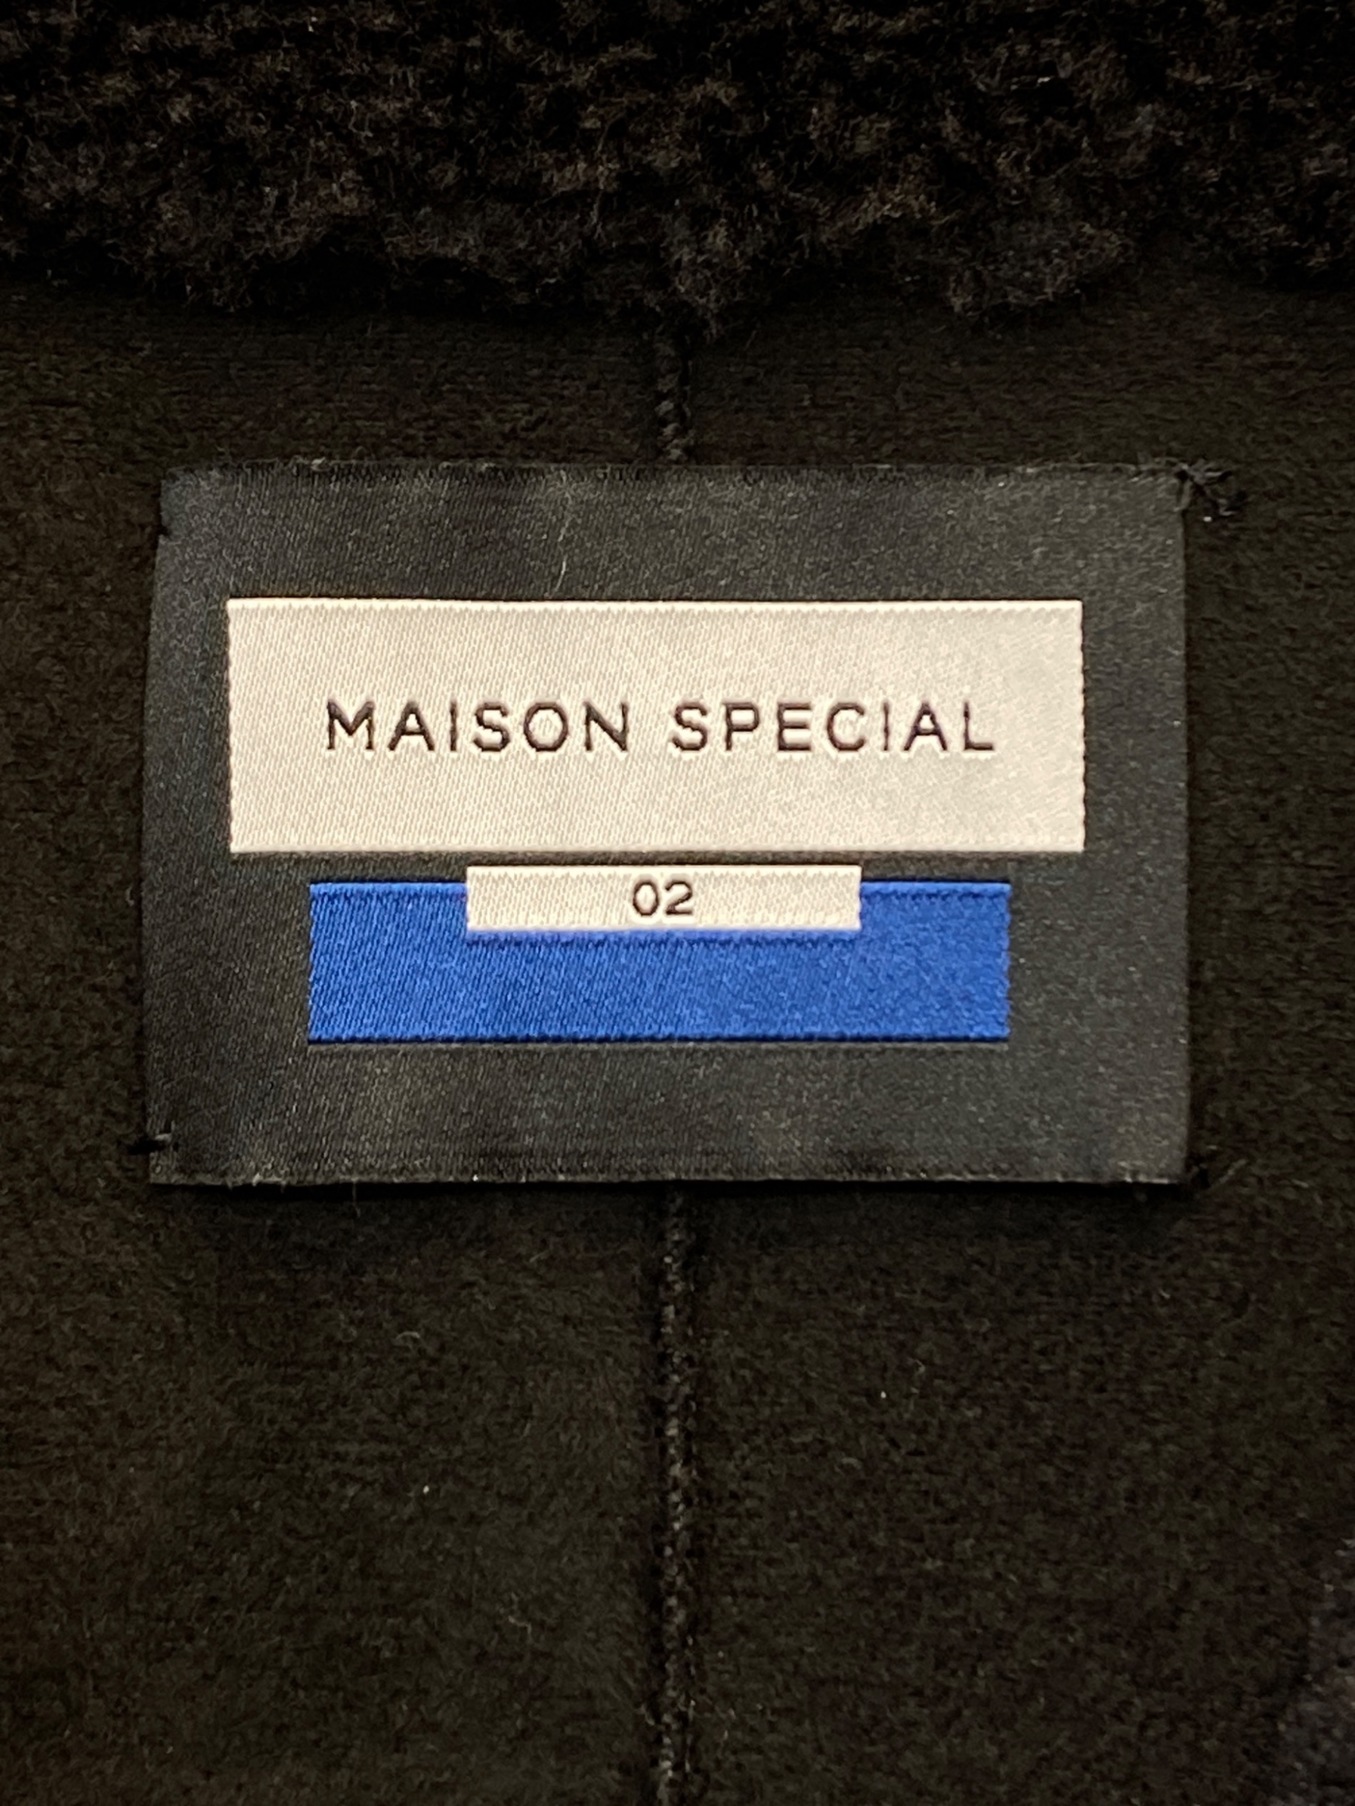 MAISON SPECIAL (メゾンスペシャル) シャイニーボアプライムオーバーダブルコート ブラック サイズ:02